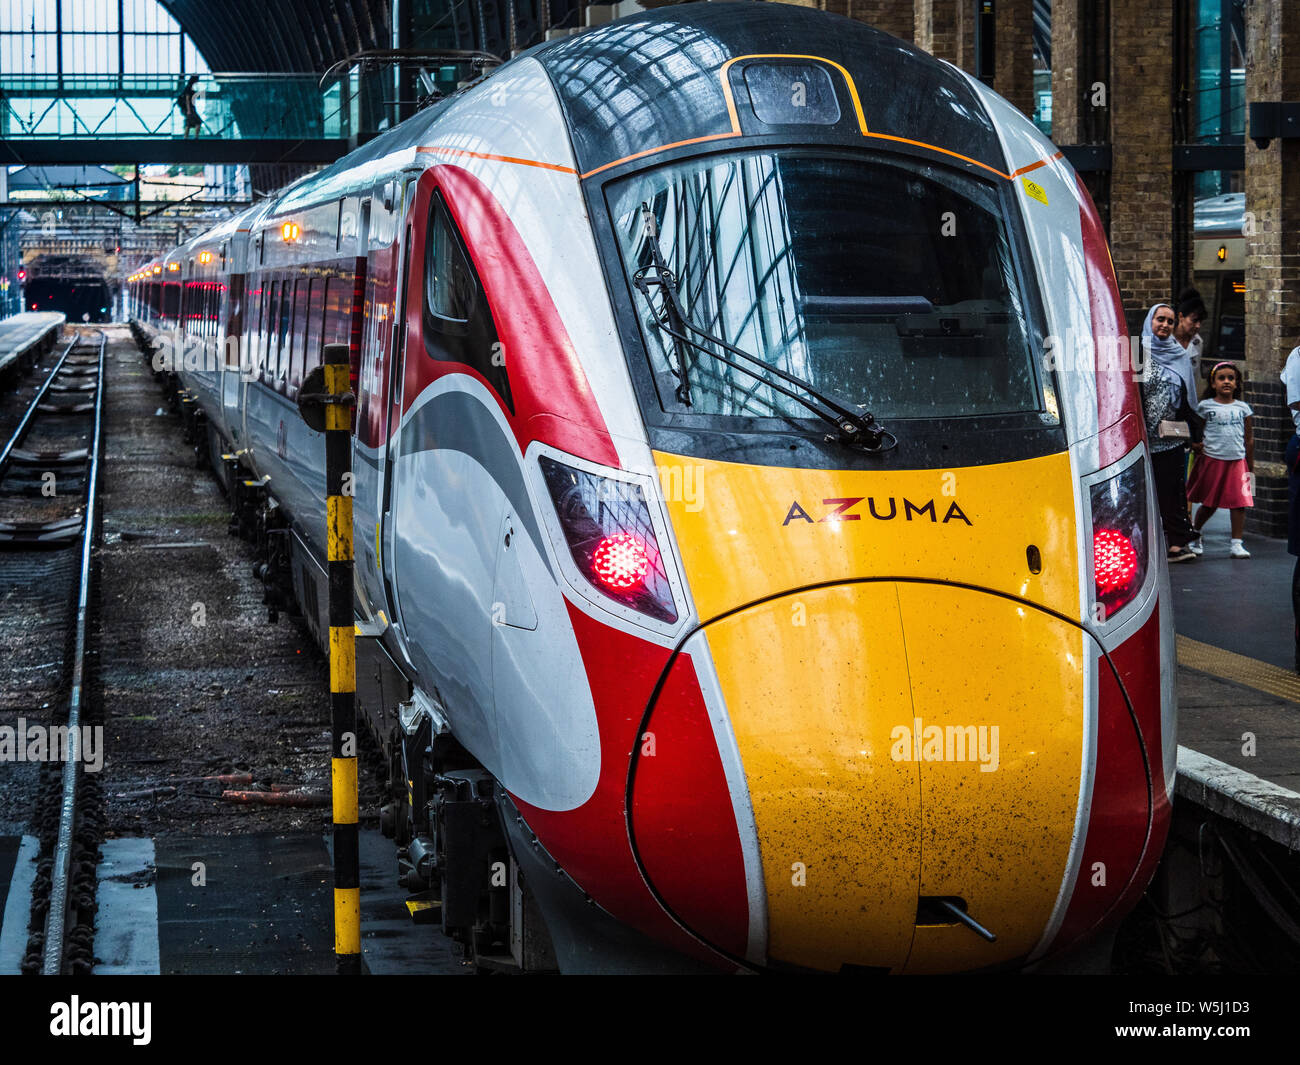 LNER Azuma treno a Londra di Kings Cross Station - la Hitachi Azuma i treni sono entrati in servizio sulla East Coast Main Line nel 2019. Foto Stock